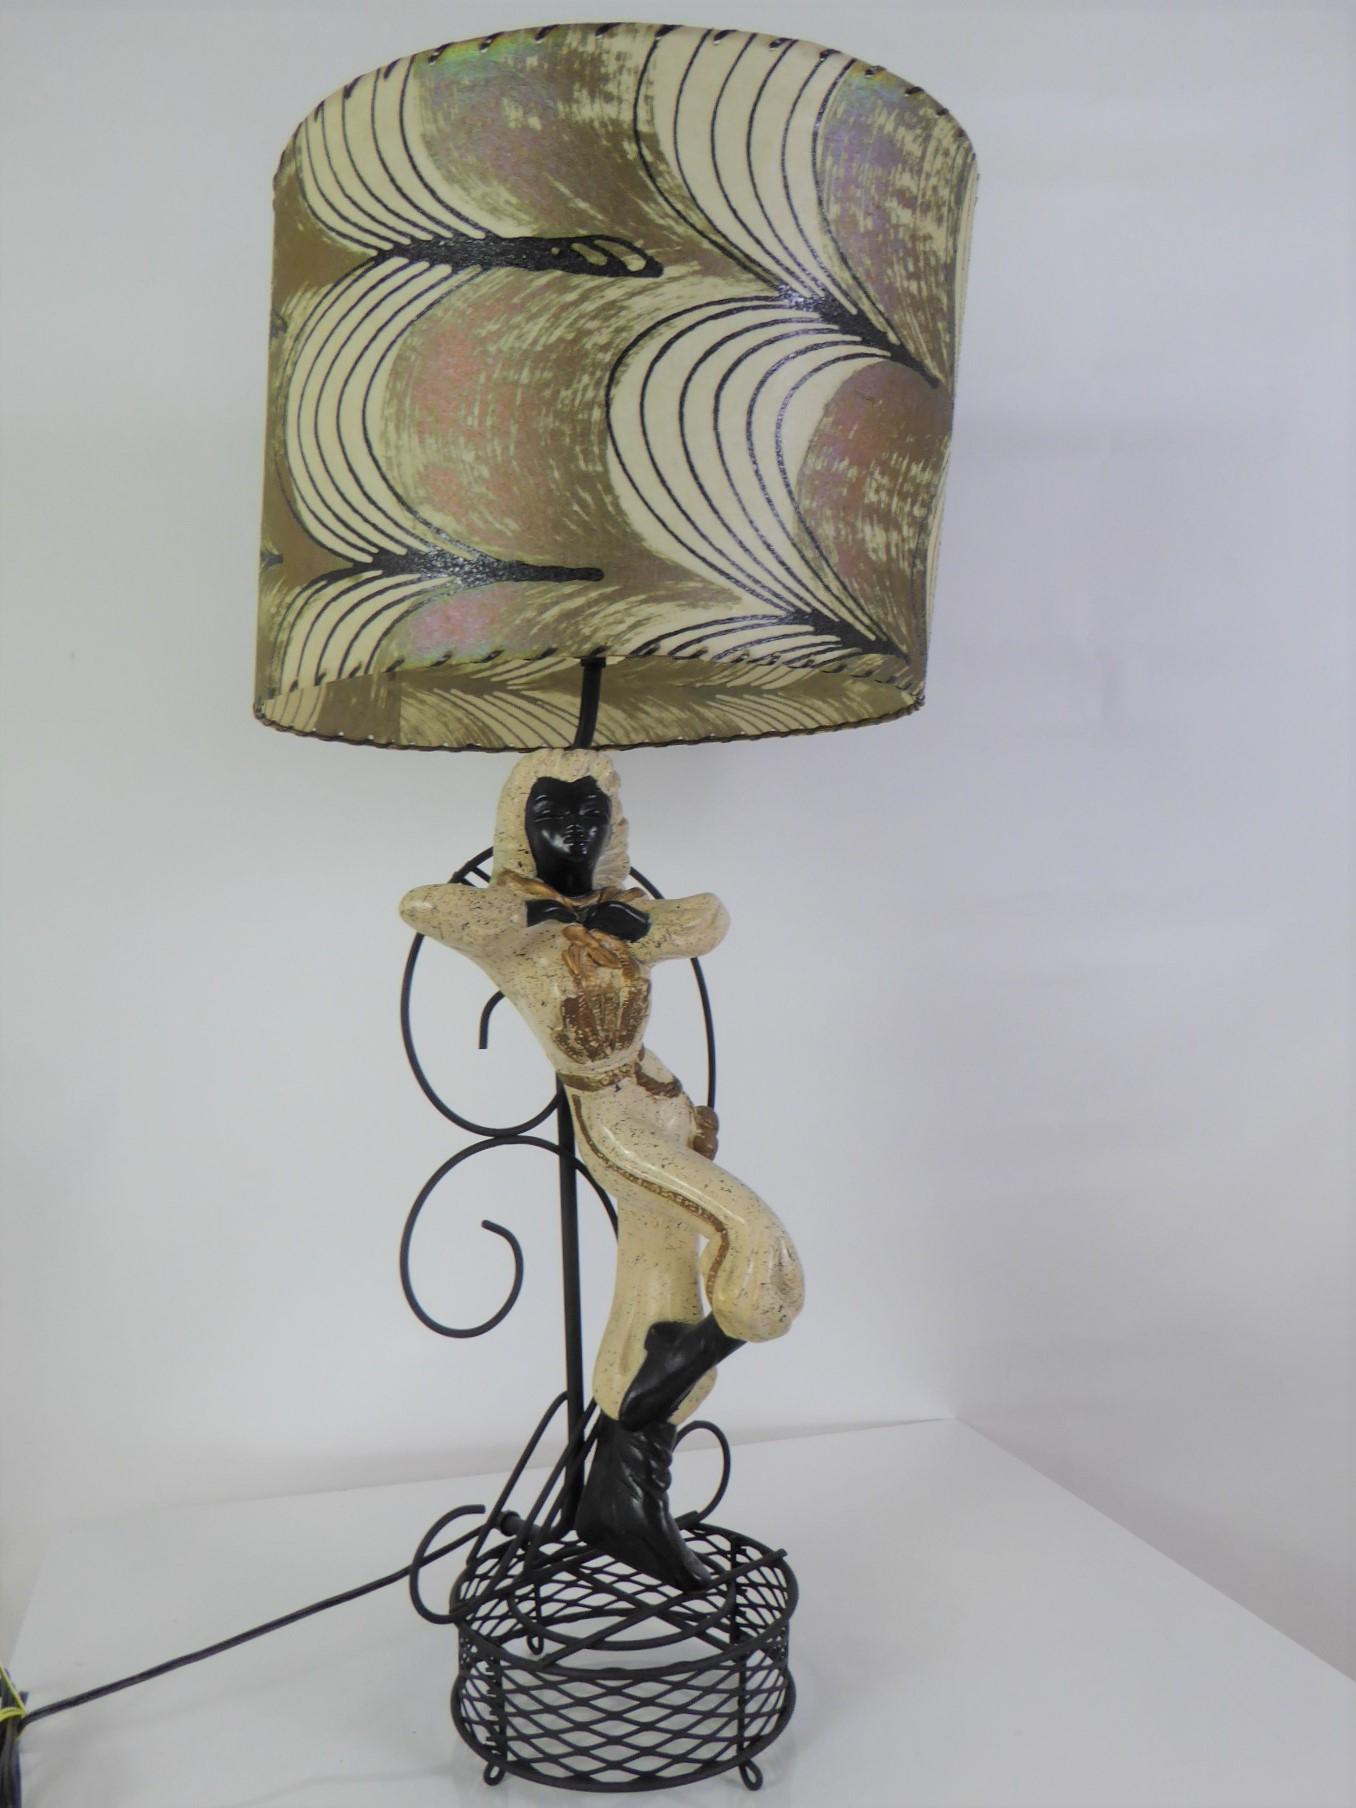 Cette magnifique lampe en plâtre Reglor du milieu du siècle représente une fille gaucho argentine avec son bandana autour du cou et ses bolos (armes) suspendus à son côté. Palette de couleurs : noir, crème avec des touches d'or.
La lampe a été